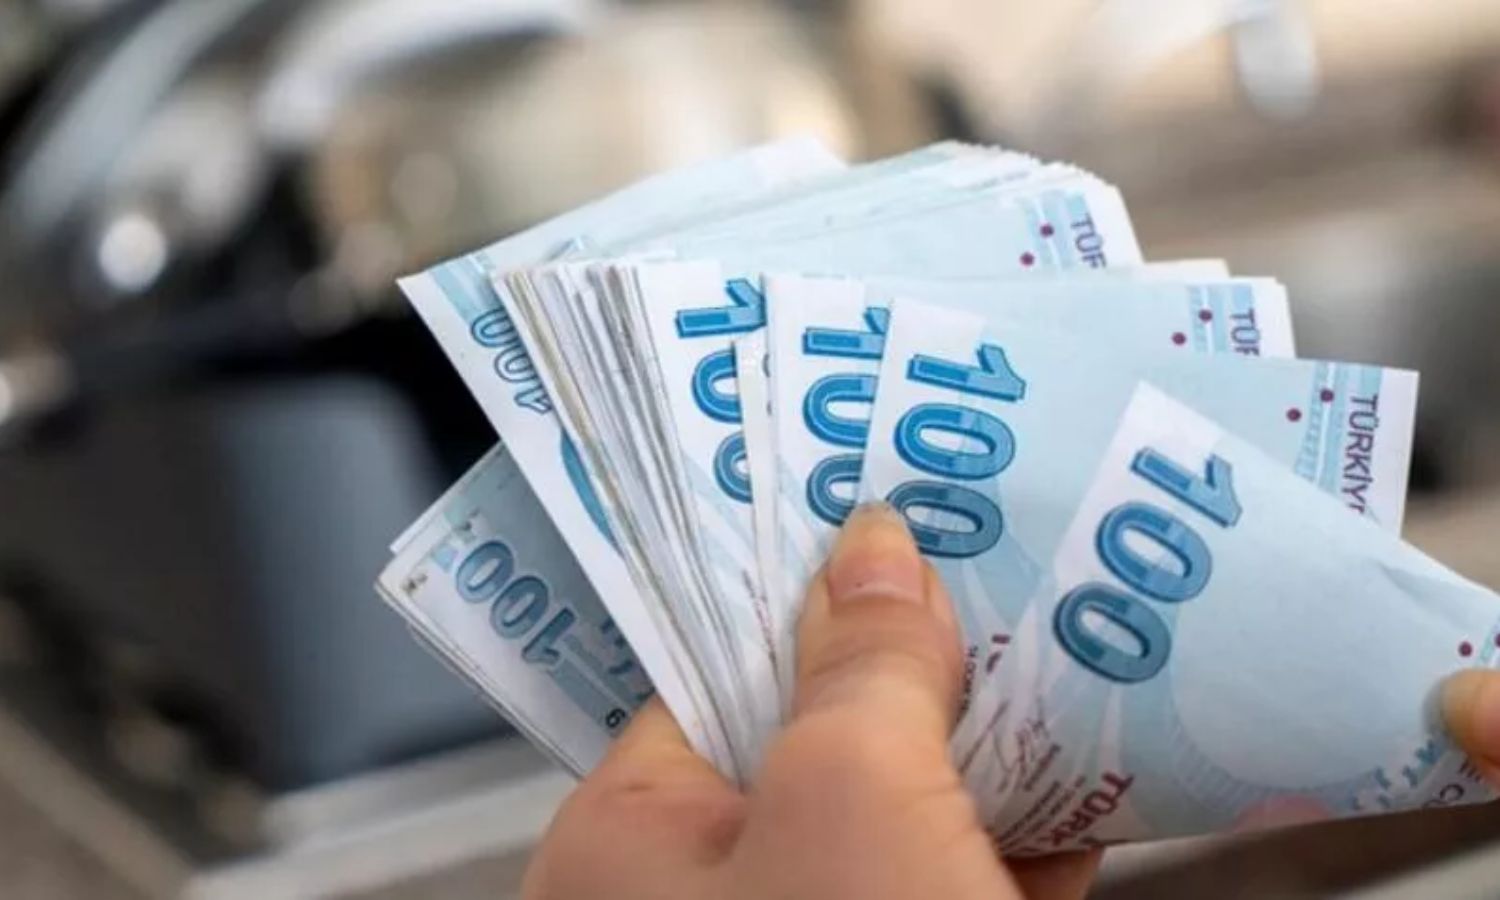 تعبيرية- قطع نقدية ورقية تركية من فئة 100 ليرة (ملييت)